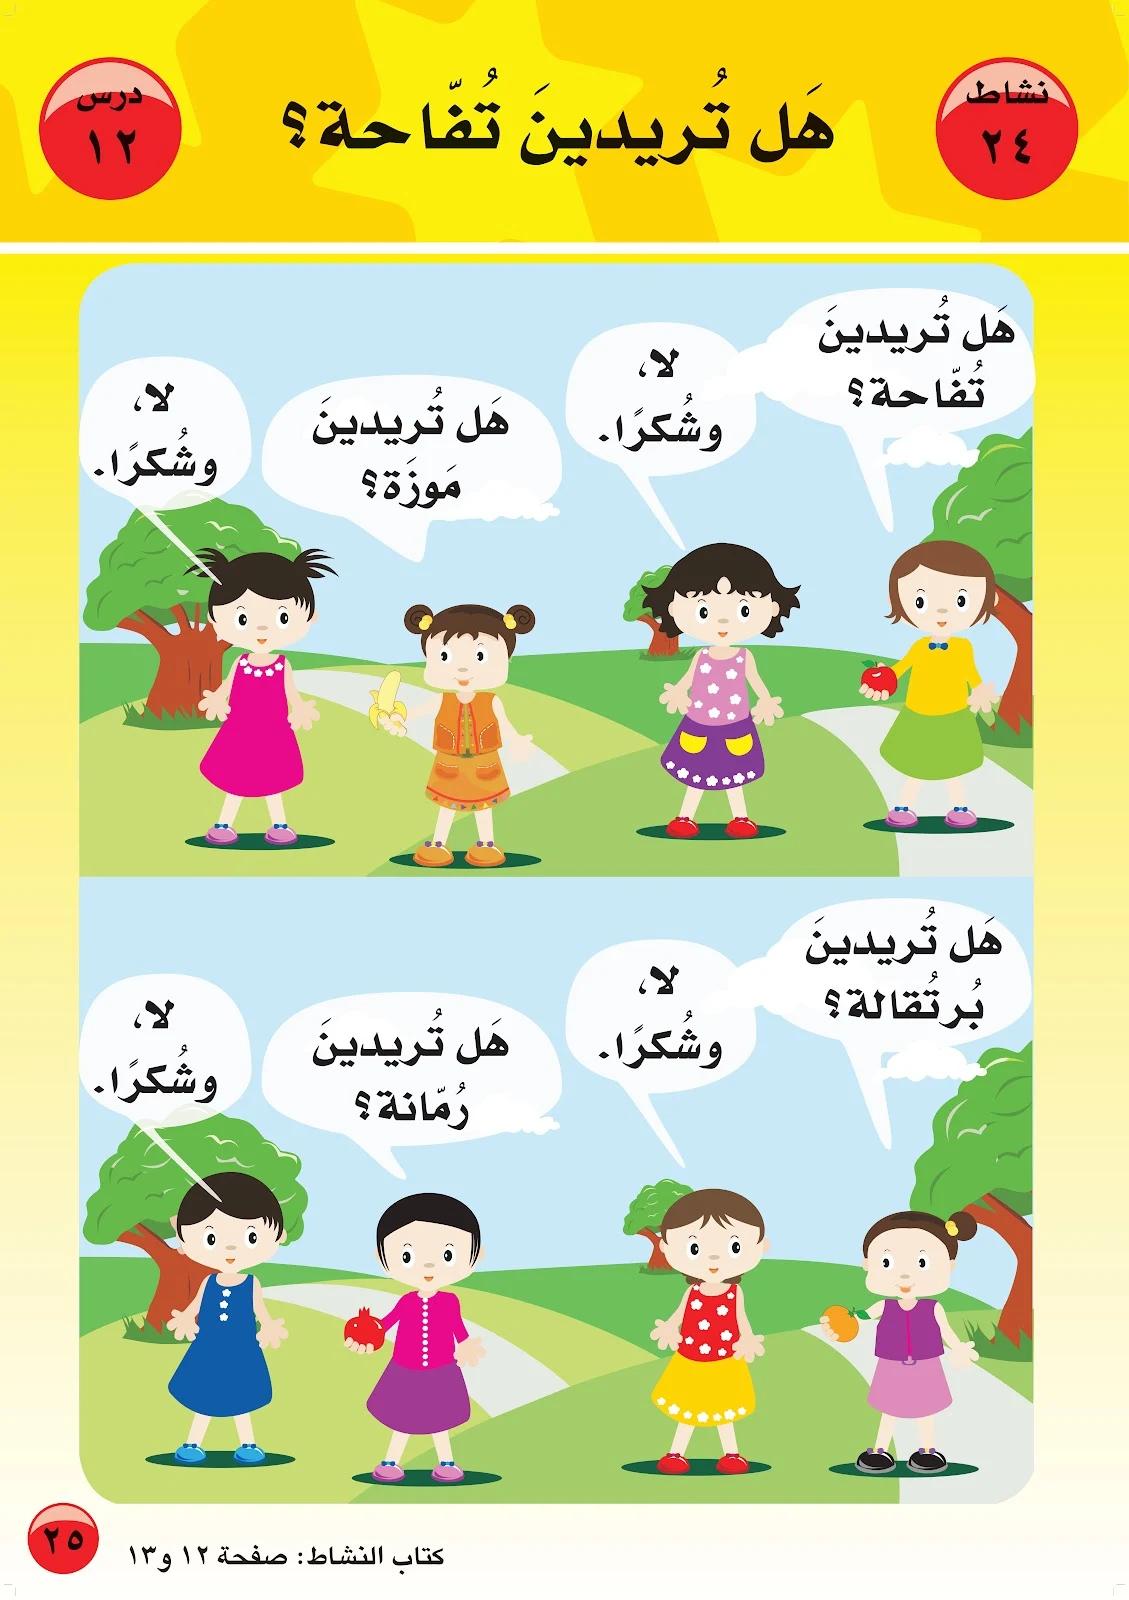 ملزمة تعليم اللغة العربية 5 لغير الناطقين بها pdf تحميل مباشر